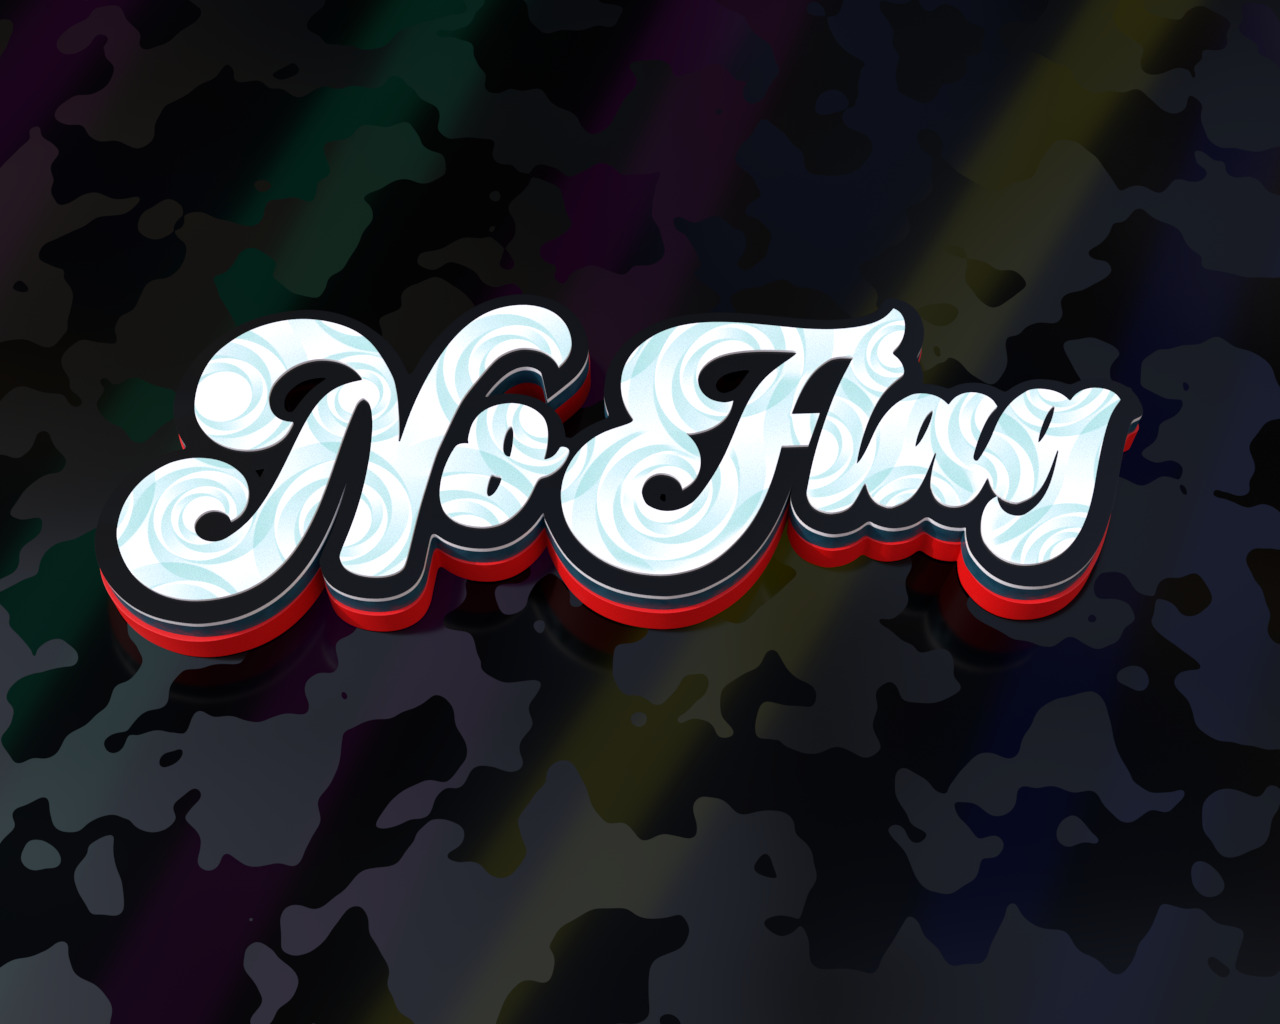 No Flag